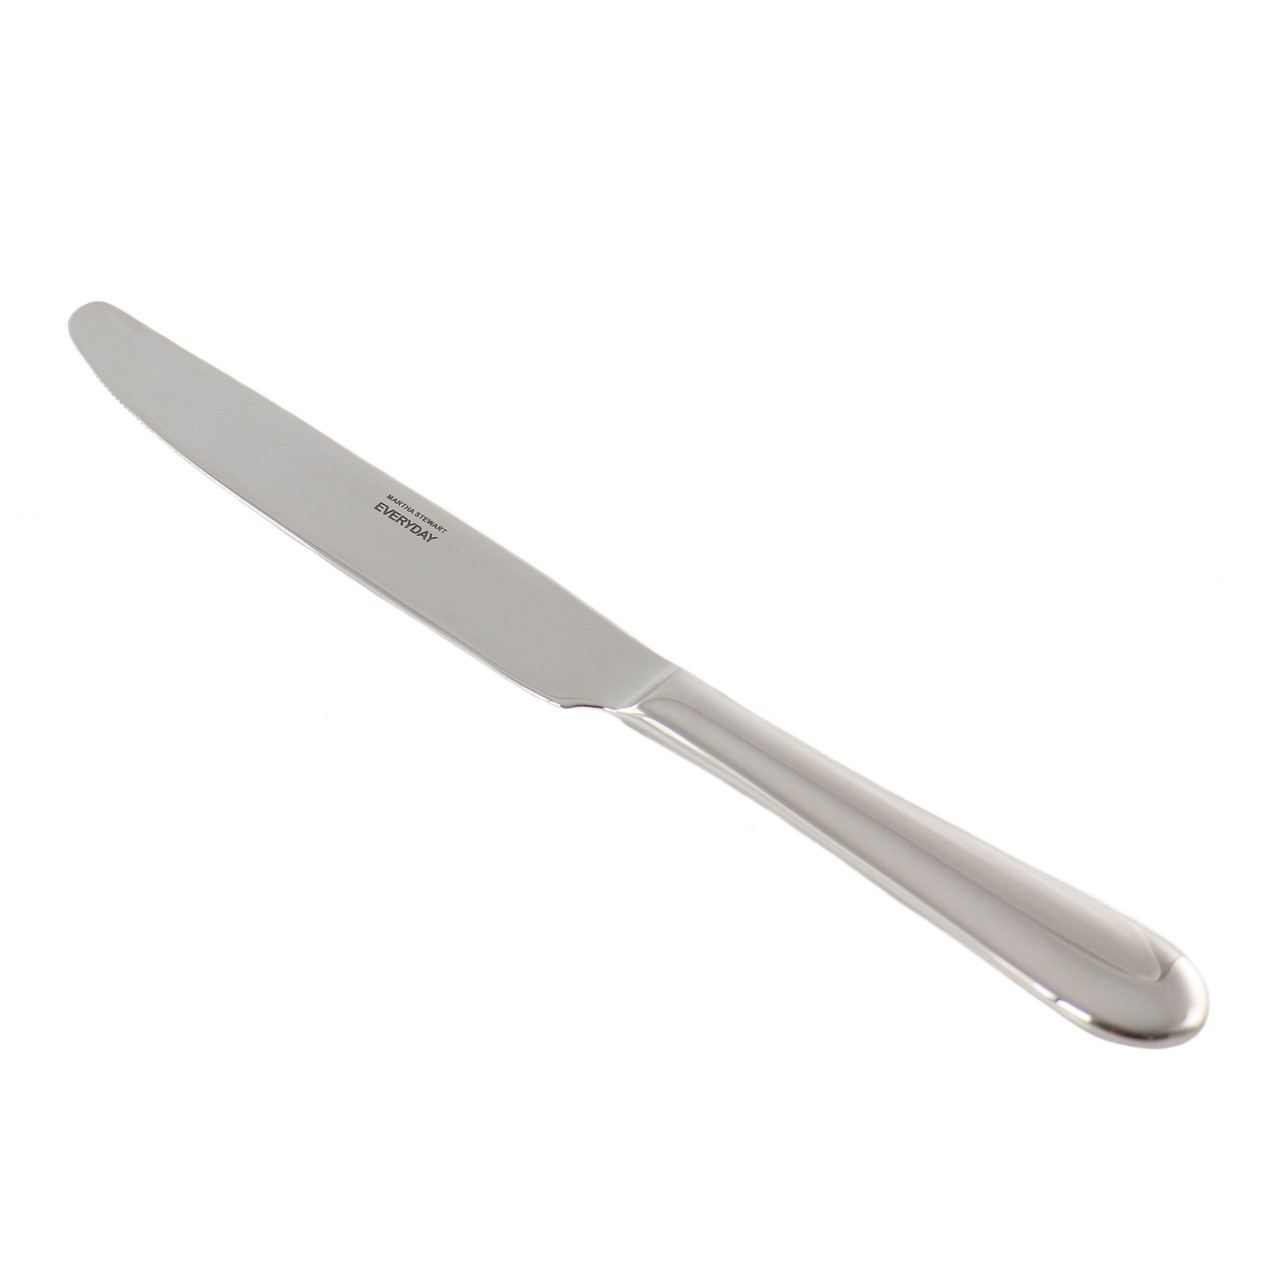 Martha Stewart Everyday 8-Piece Stainless Steel Dinner Knife Set